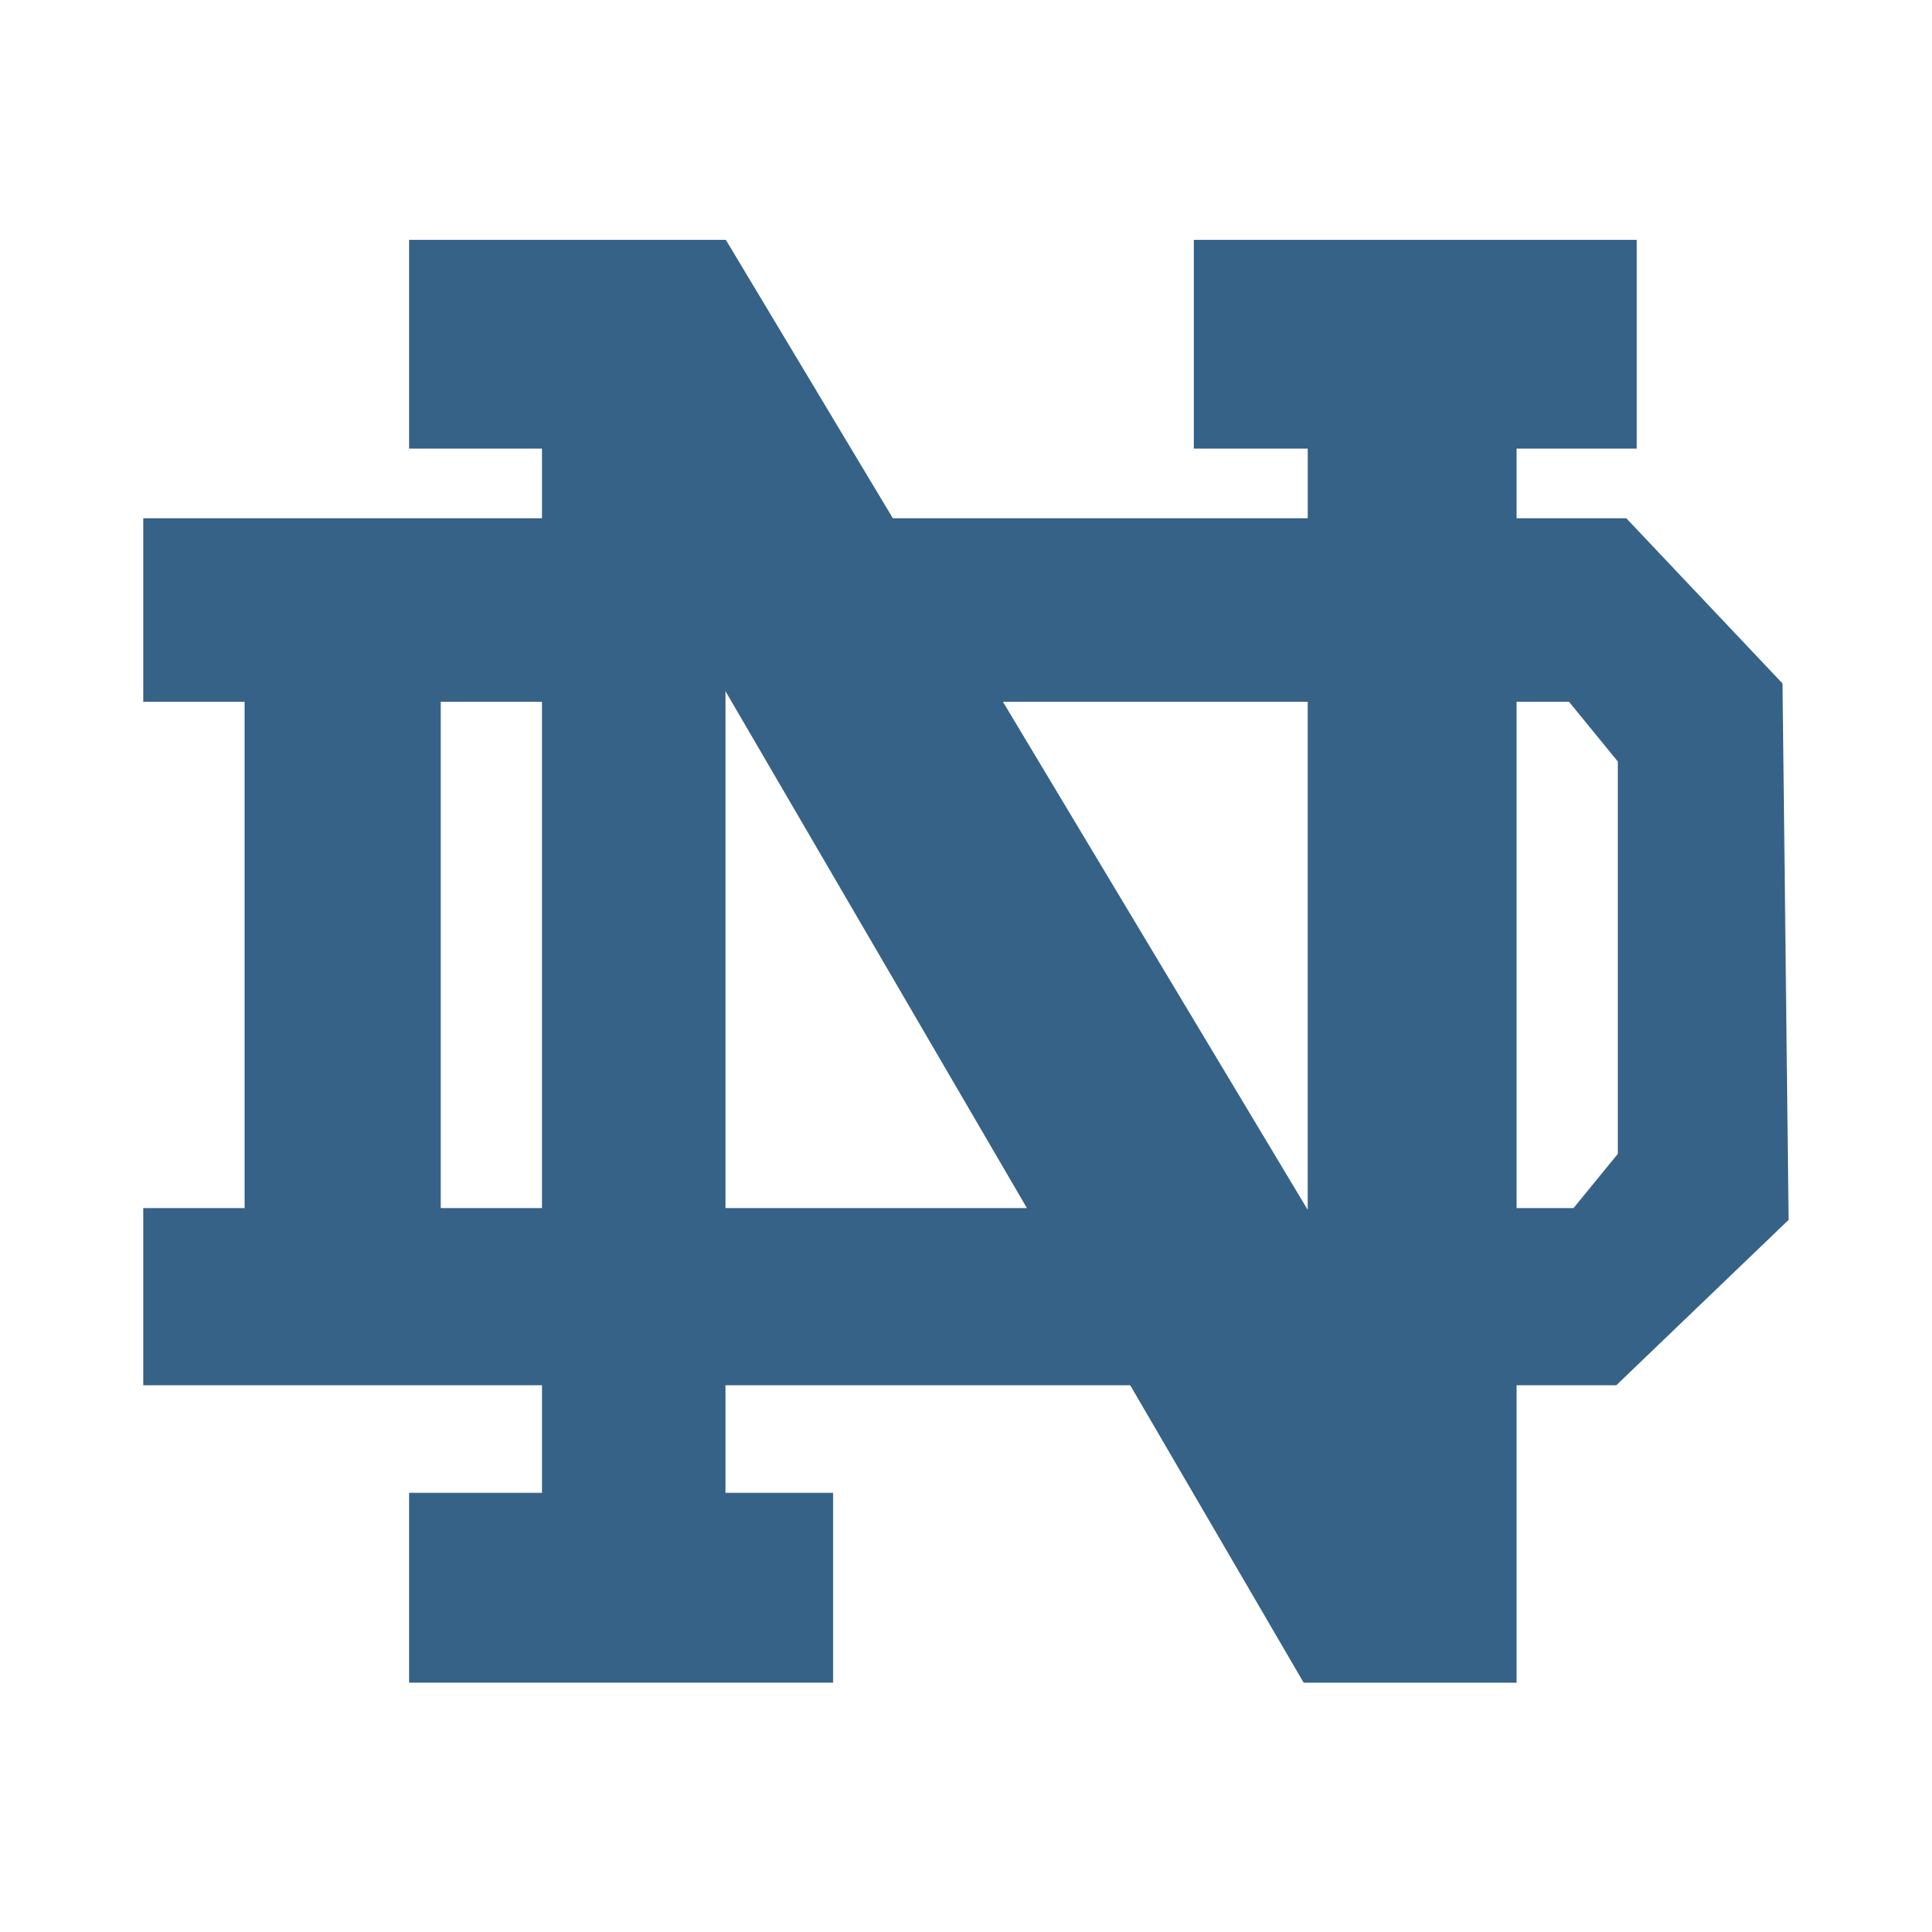 Notre Dame Logo - Notre Dame Fighting Irish Logo PNG Transparent & SVG Vector ...